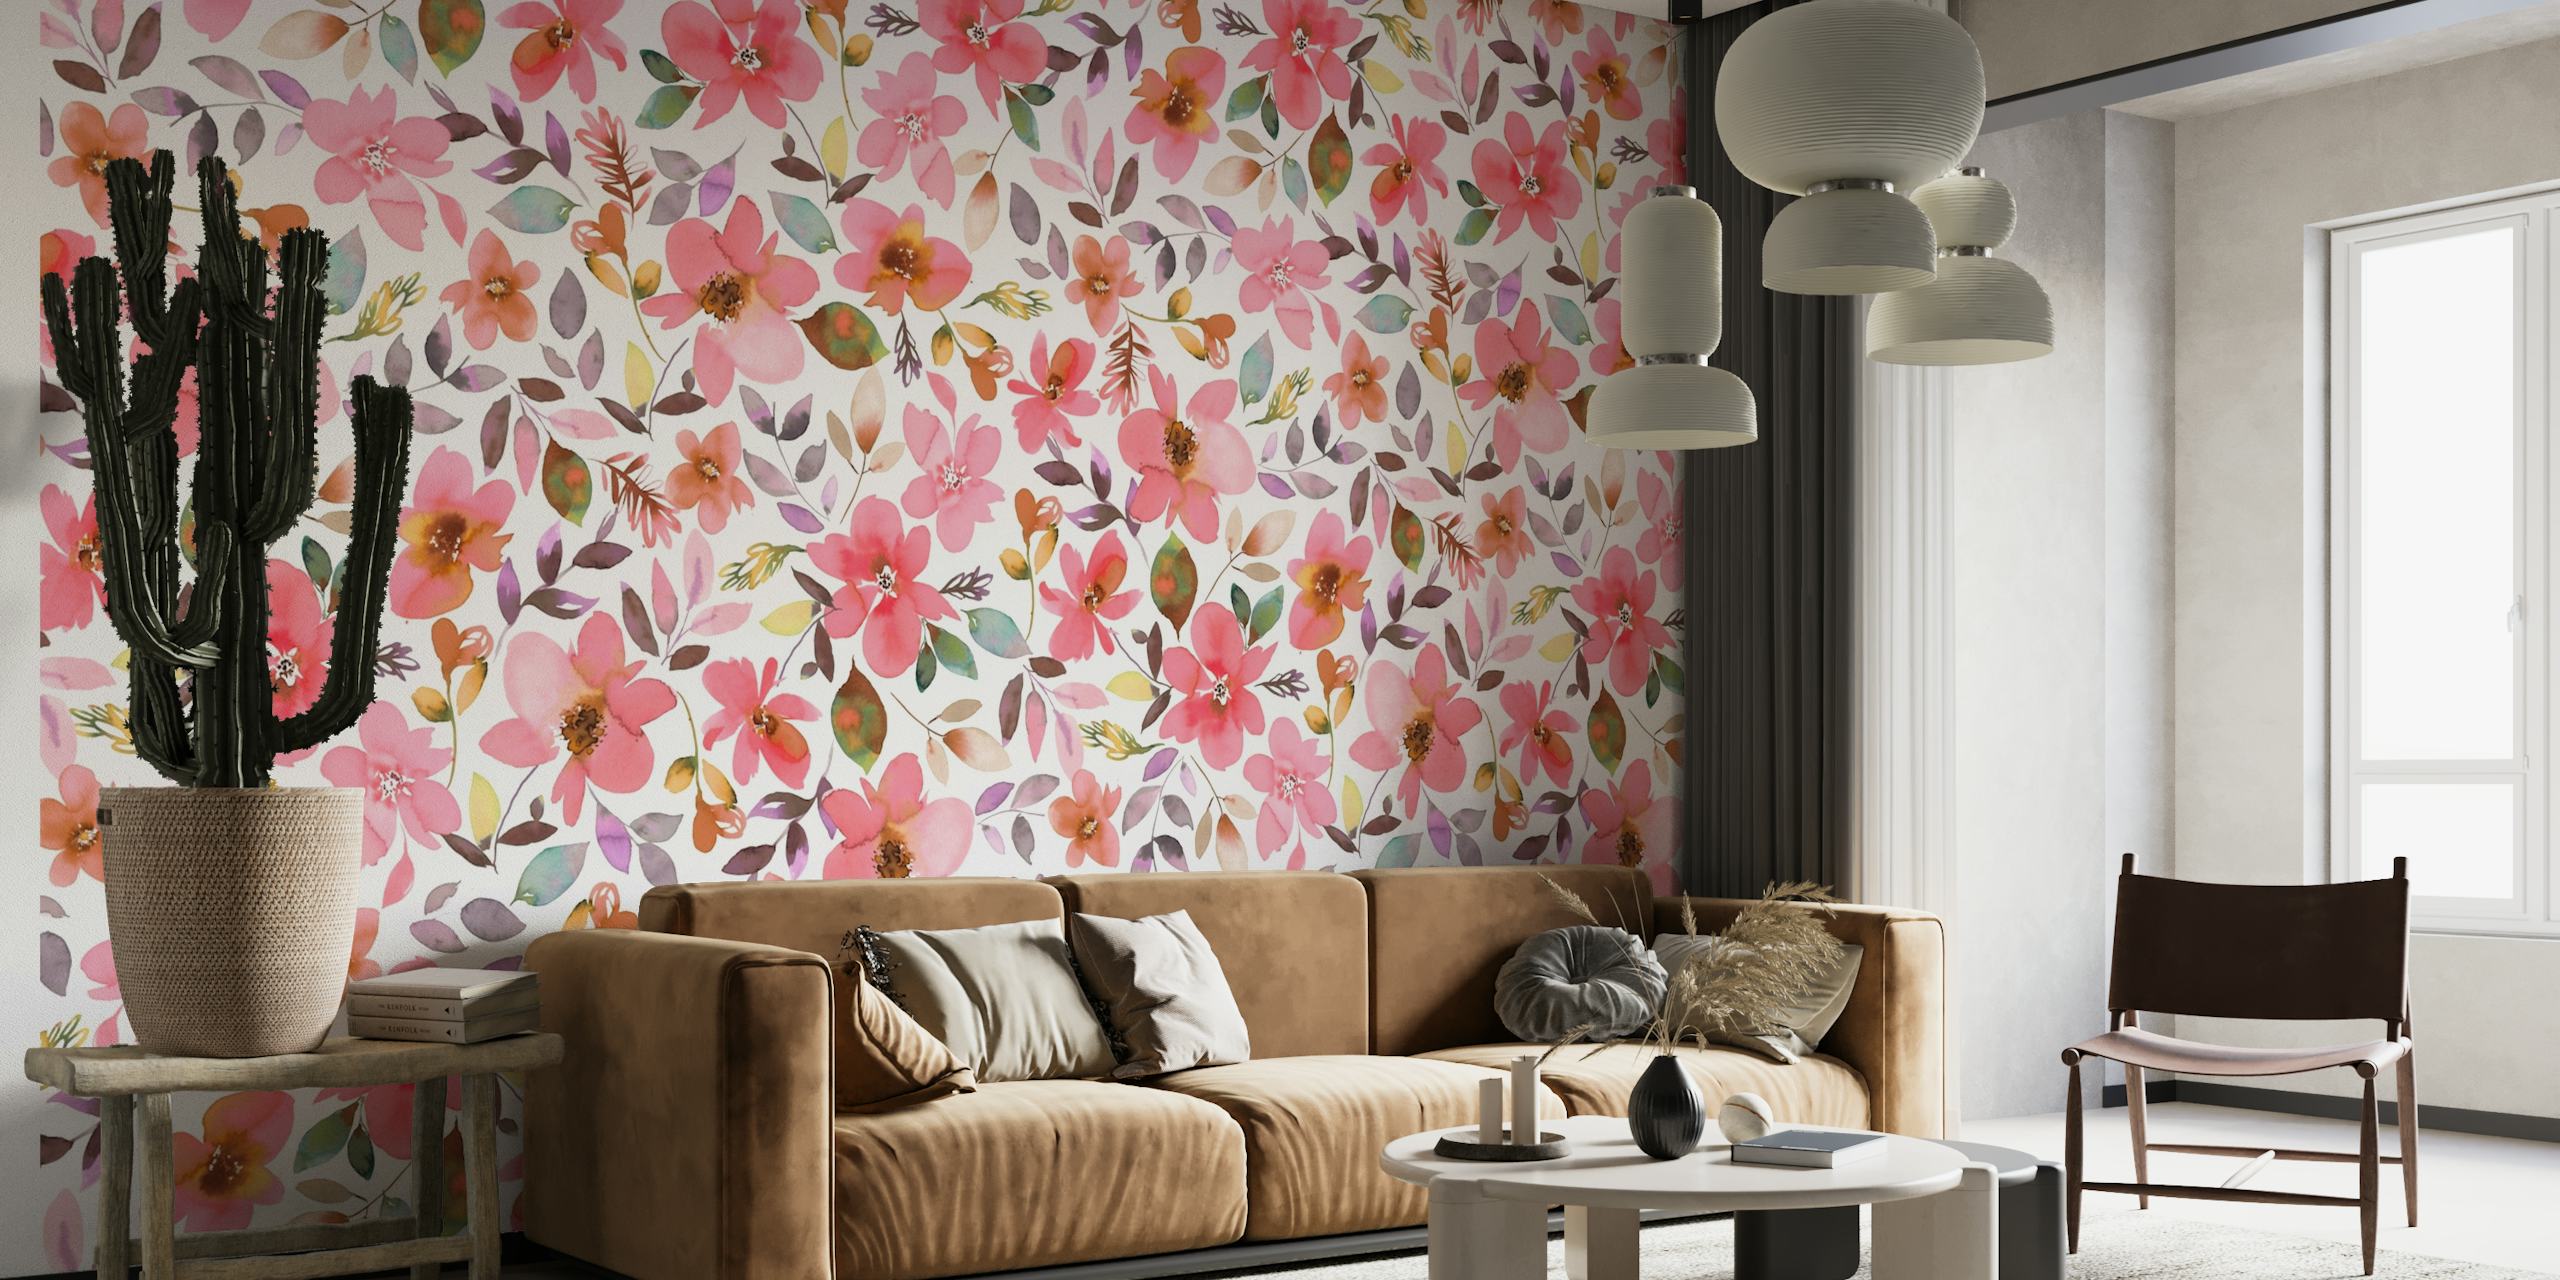 Šareni zidni mural s koraljnim cvijećem i tropskim biljkama stvara živahnu ljetnu temu.